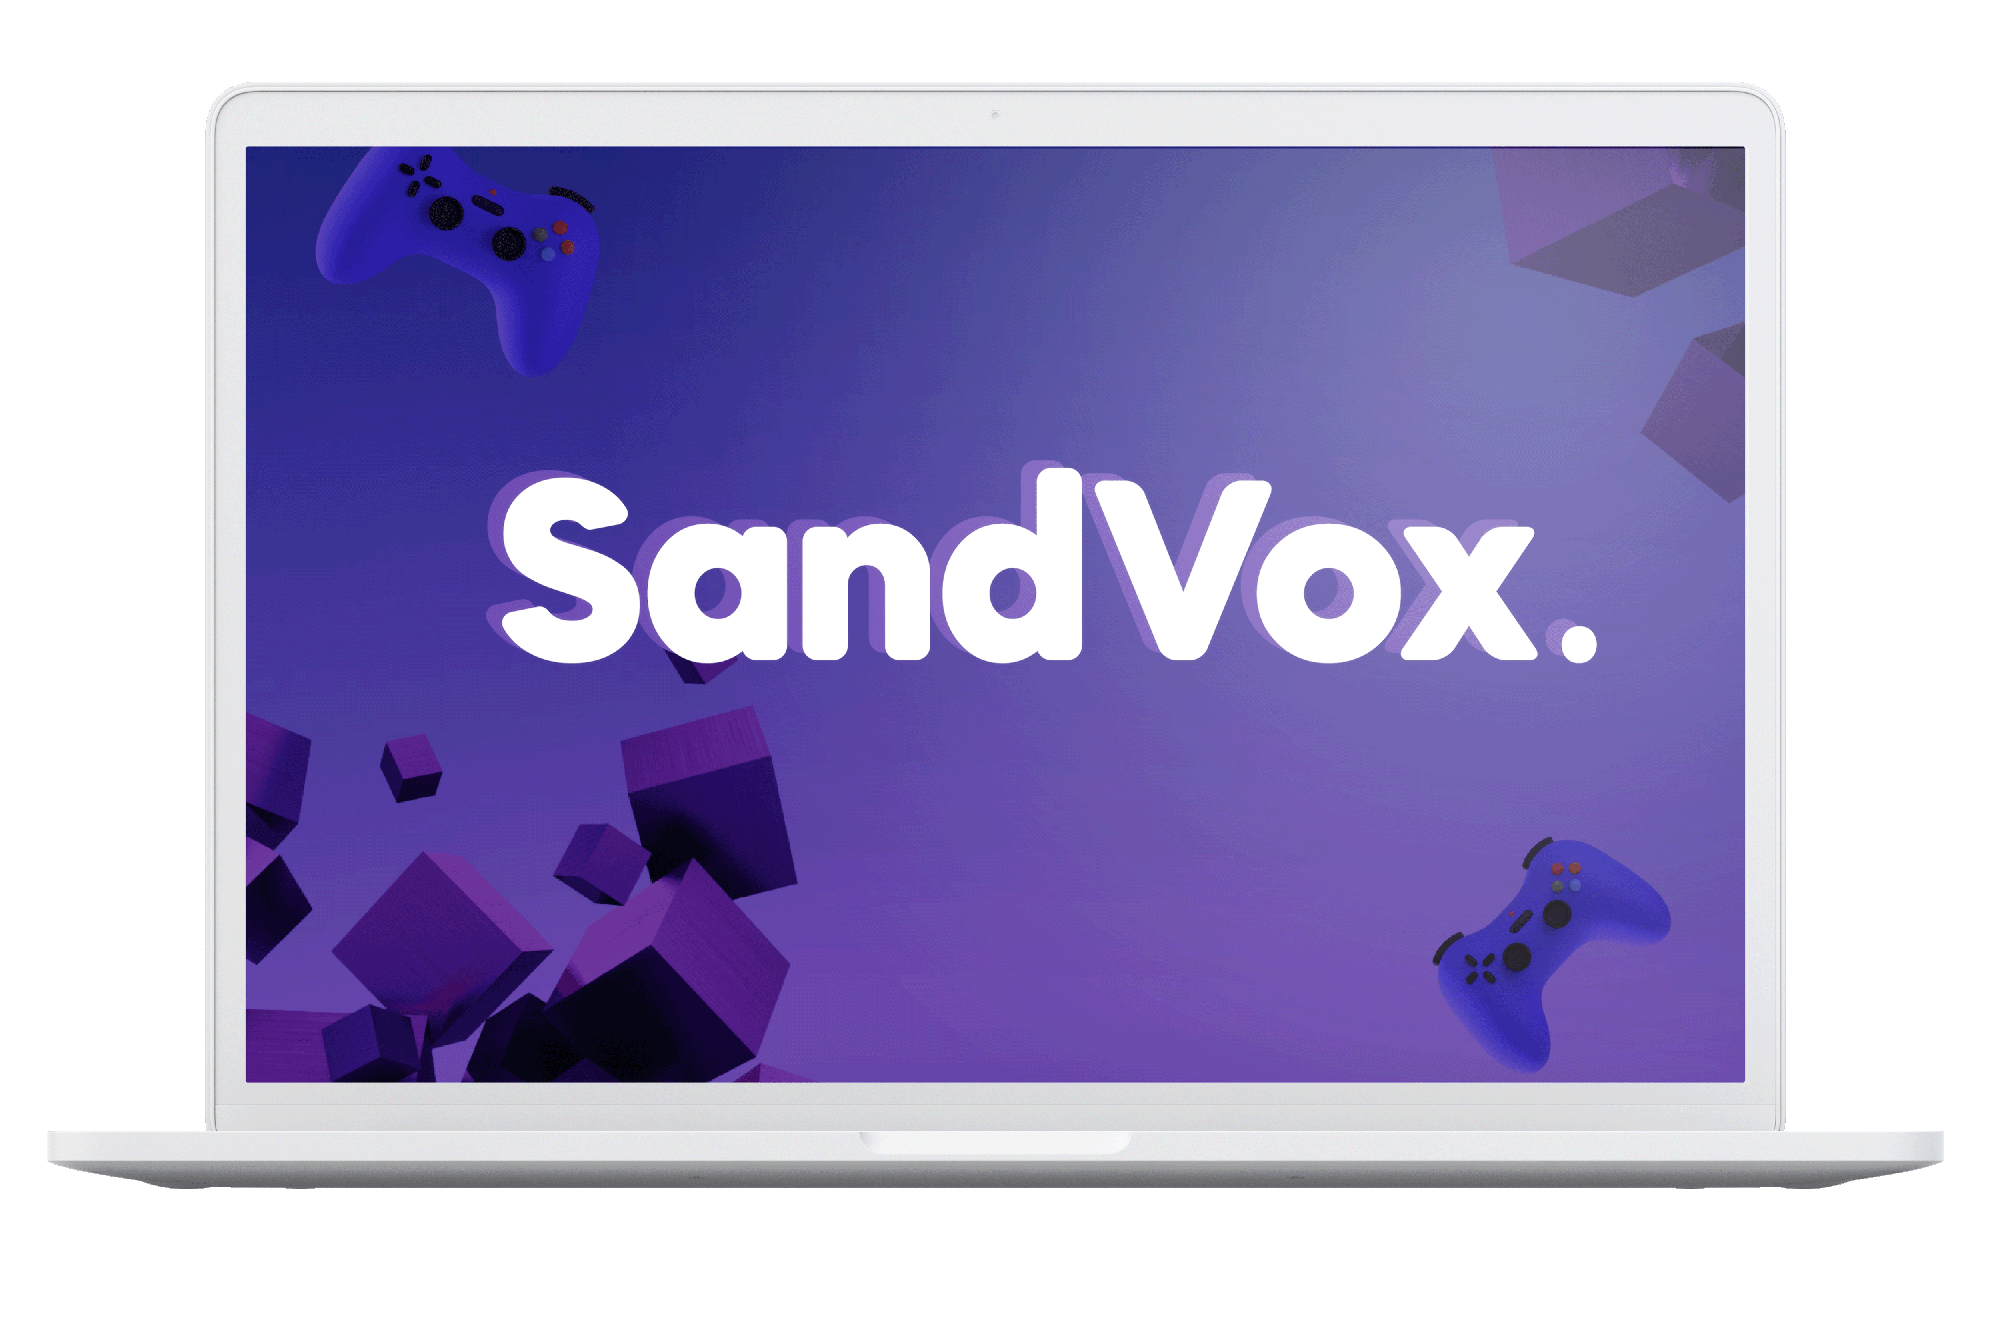 SandVox-localization